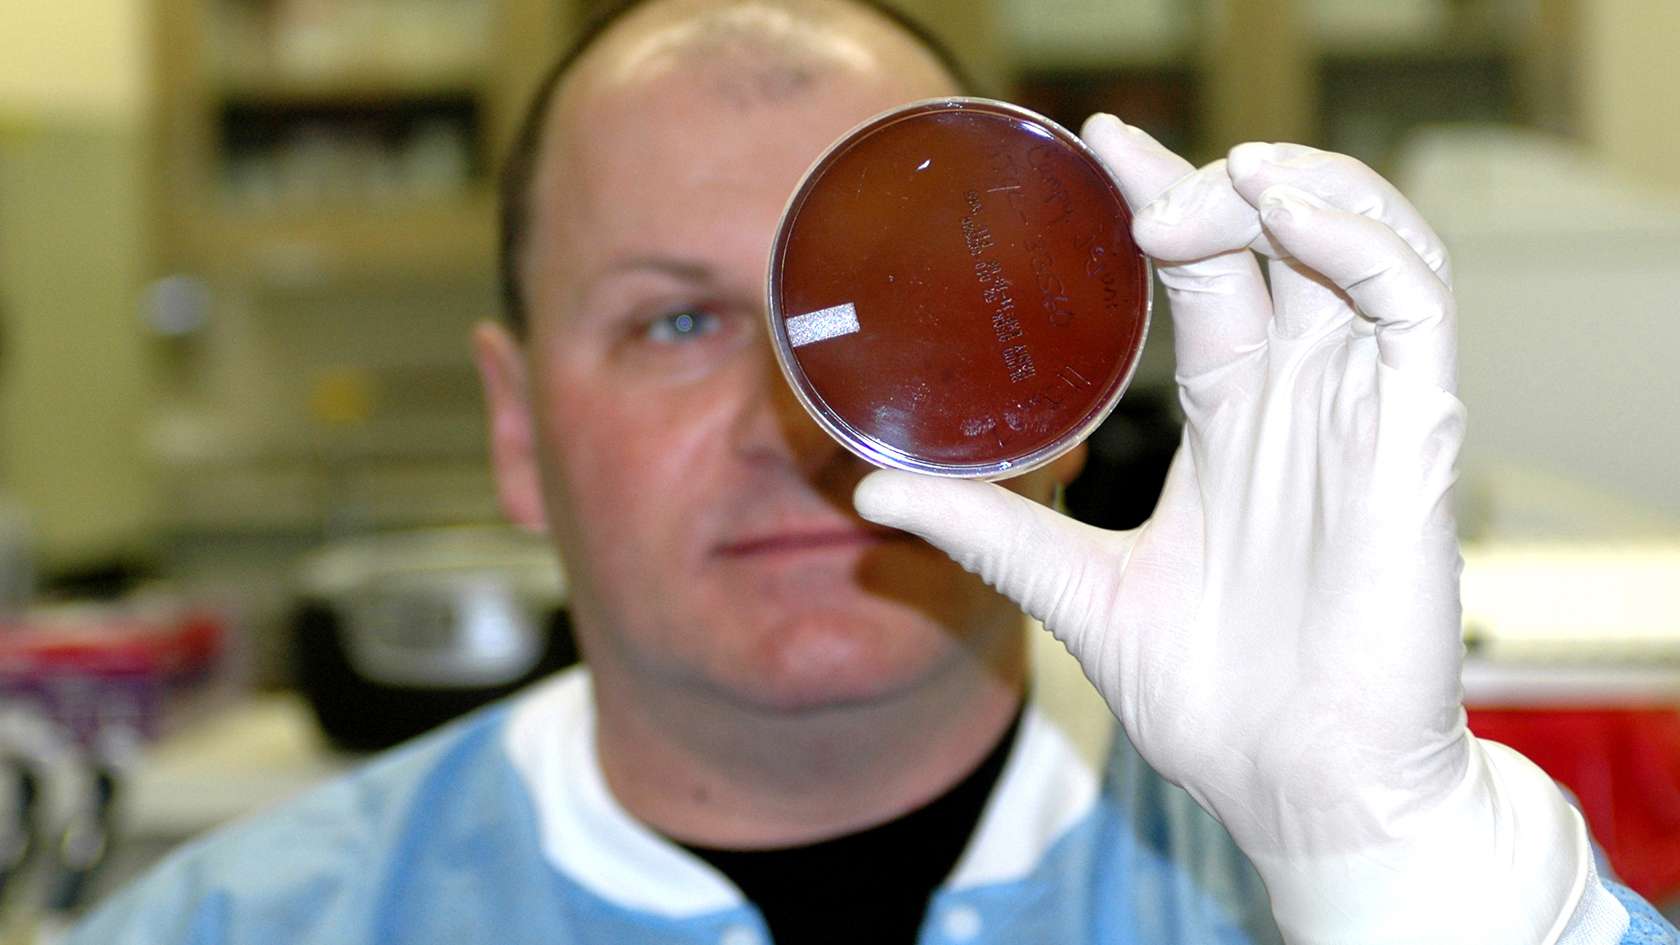 Air Force Histopathologist looking at petri dish